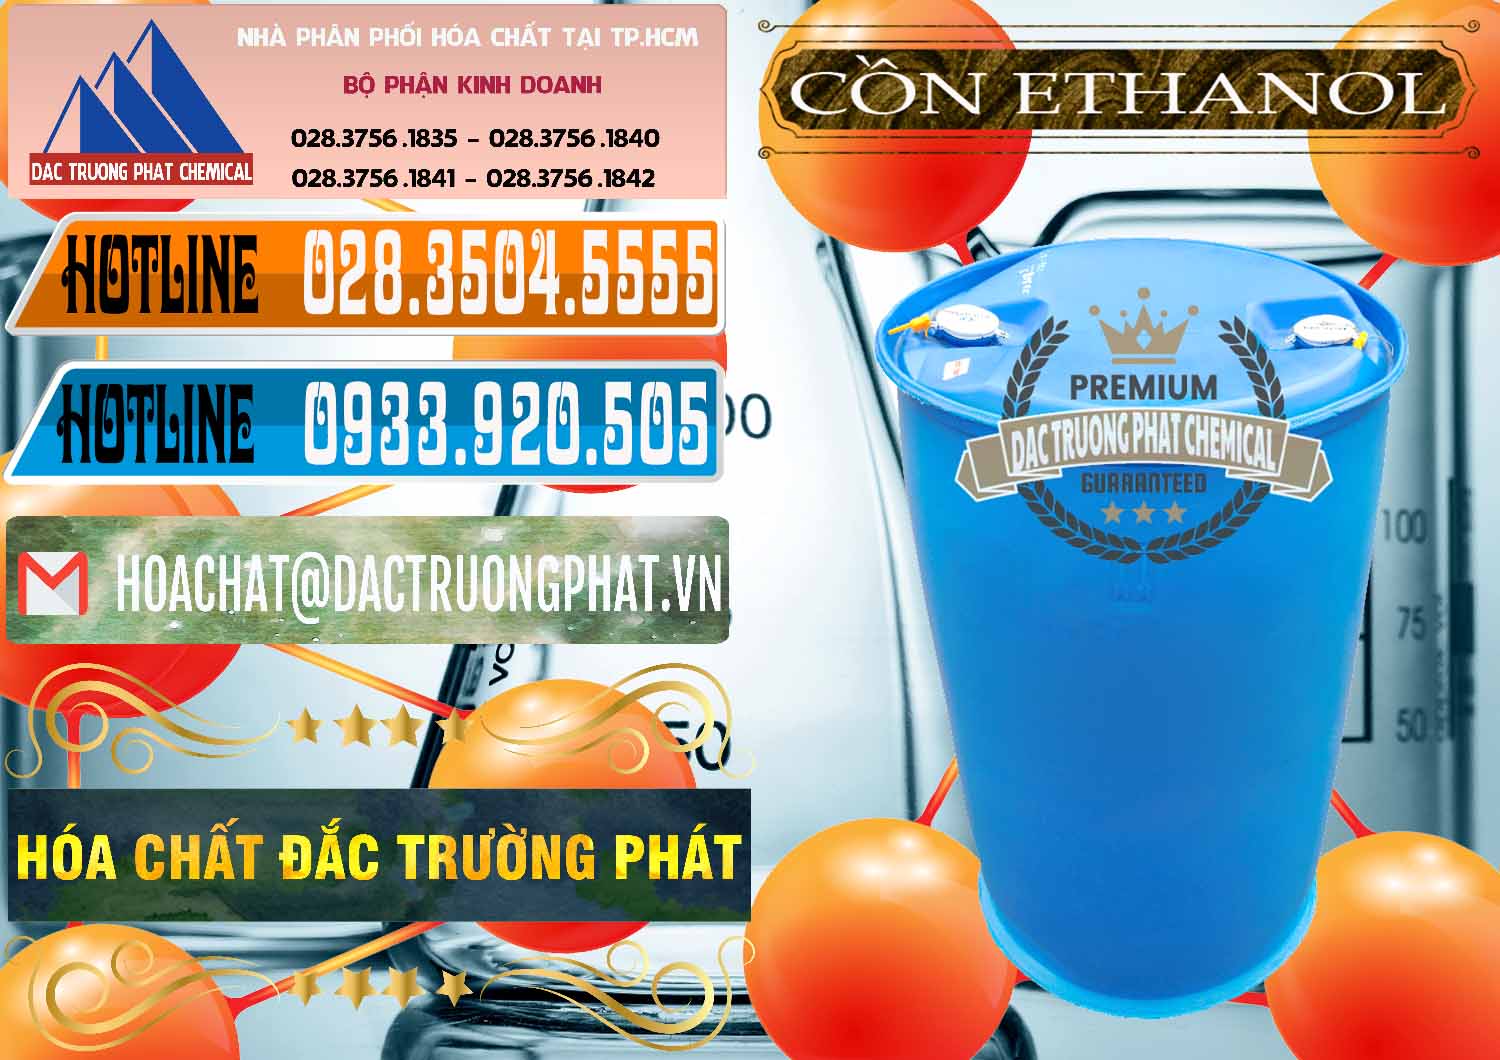 Chuyên kinh doanh & bán Cồn Ethanol - C2H5OH Thực Phẩm Food Grade Việt Nam - 0330 - Nơi chuyên kinh doanh _ phân phối hóa chất tại TP.HCM - stmp.net